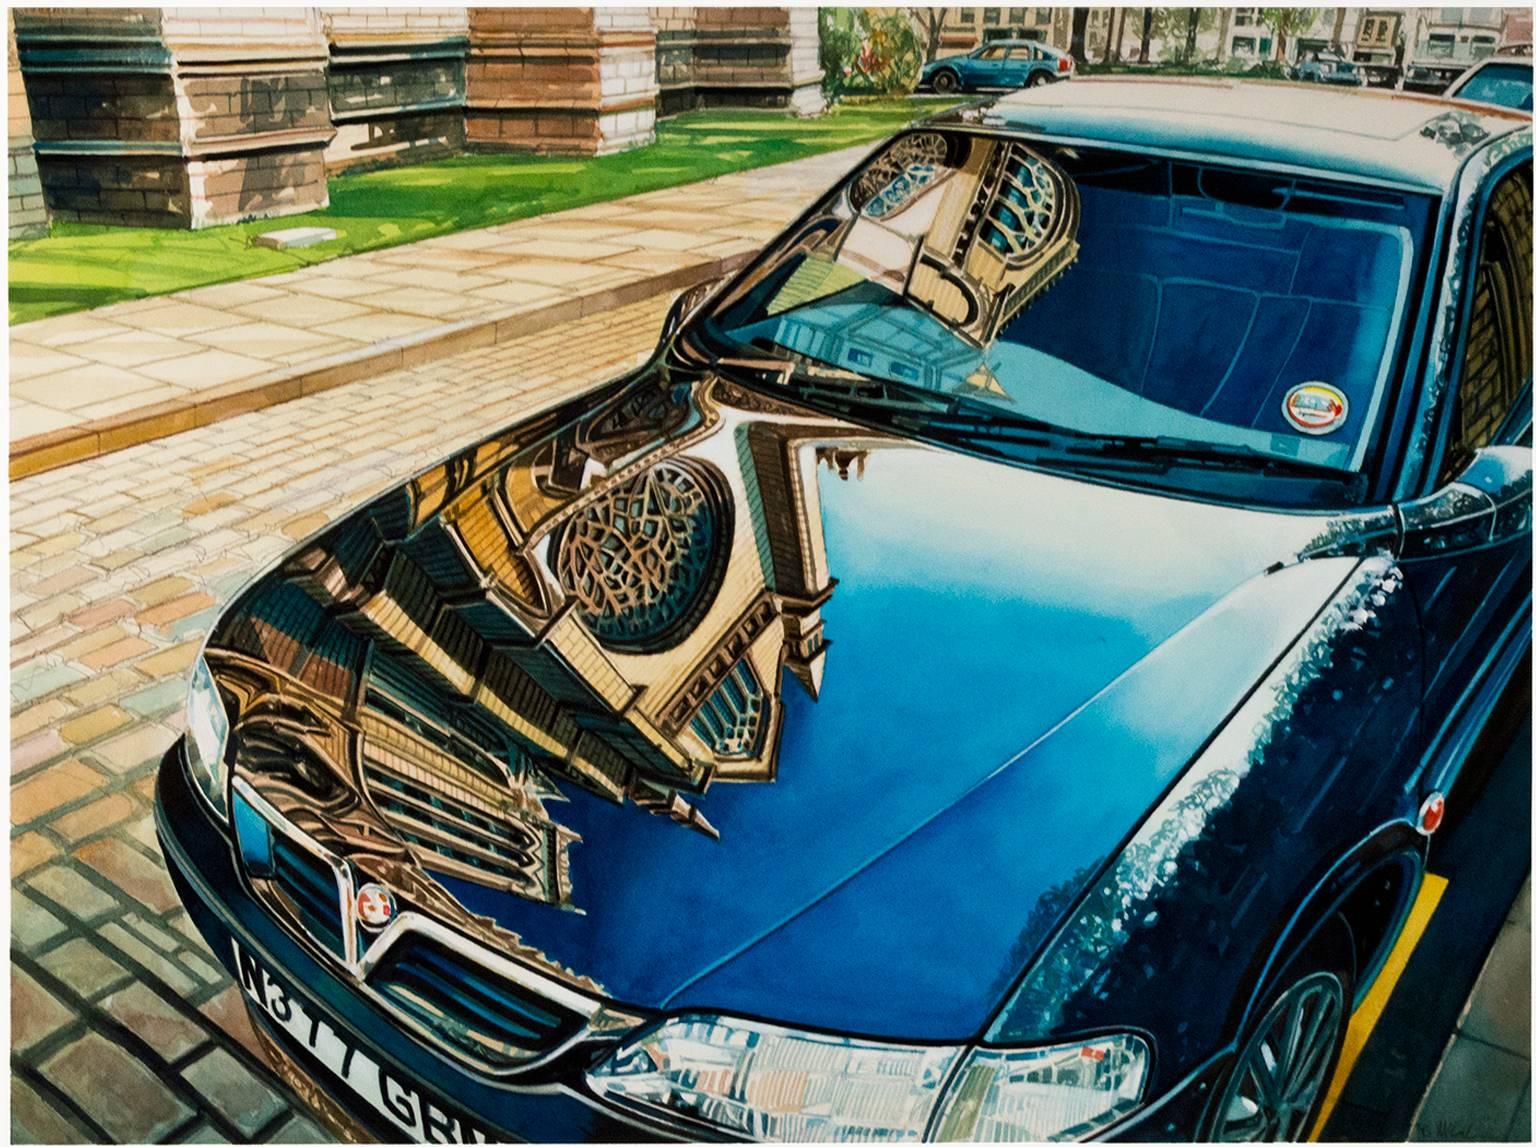 "Reflections, Lincoln, England (Car)" ist ein signiertes Original-Aquarell von Bruce McCombs. Es zeigt die Motorhaube eines gut polierten Autos, in der sich die Fassade einer Kathedrale spiegelt. Dieses Gemälde zeigt McCombs' exquisite